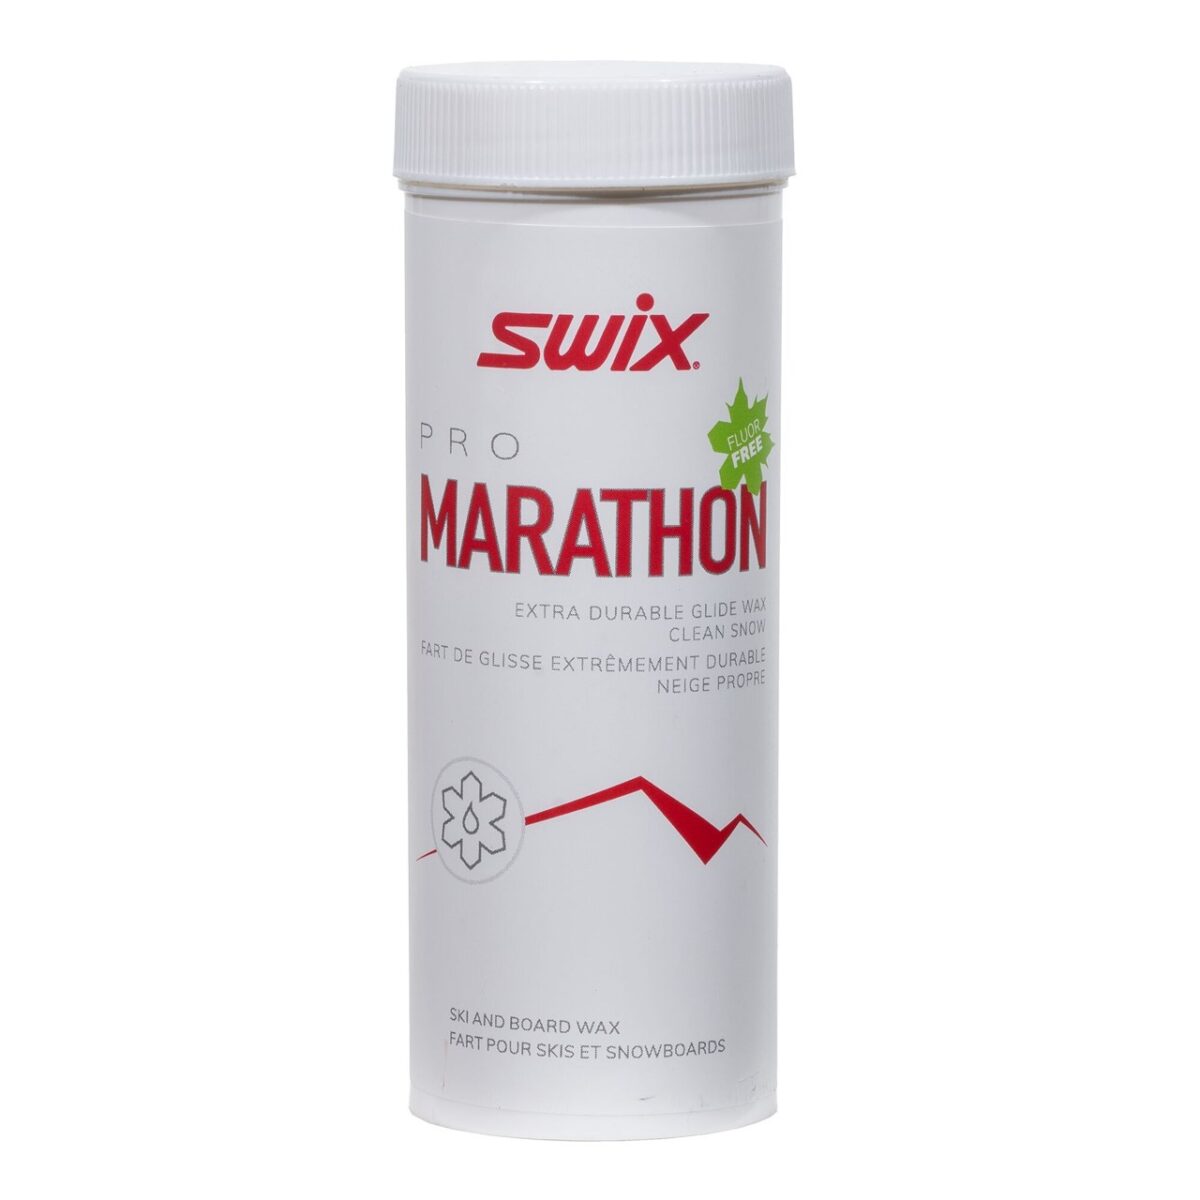 Swix Marathon Pow. Fluor Free, 40 gr